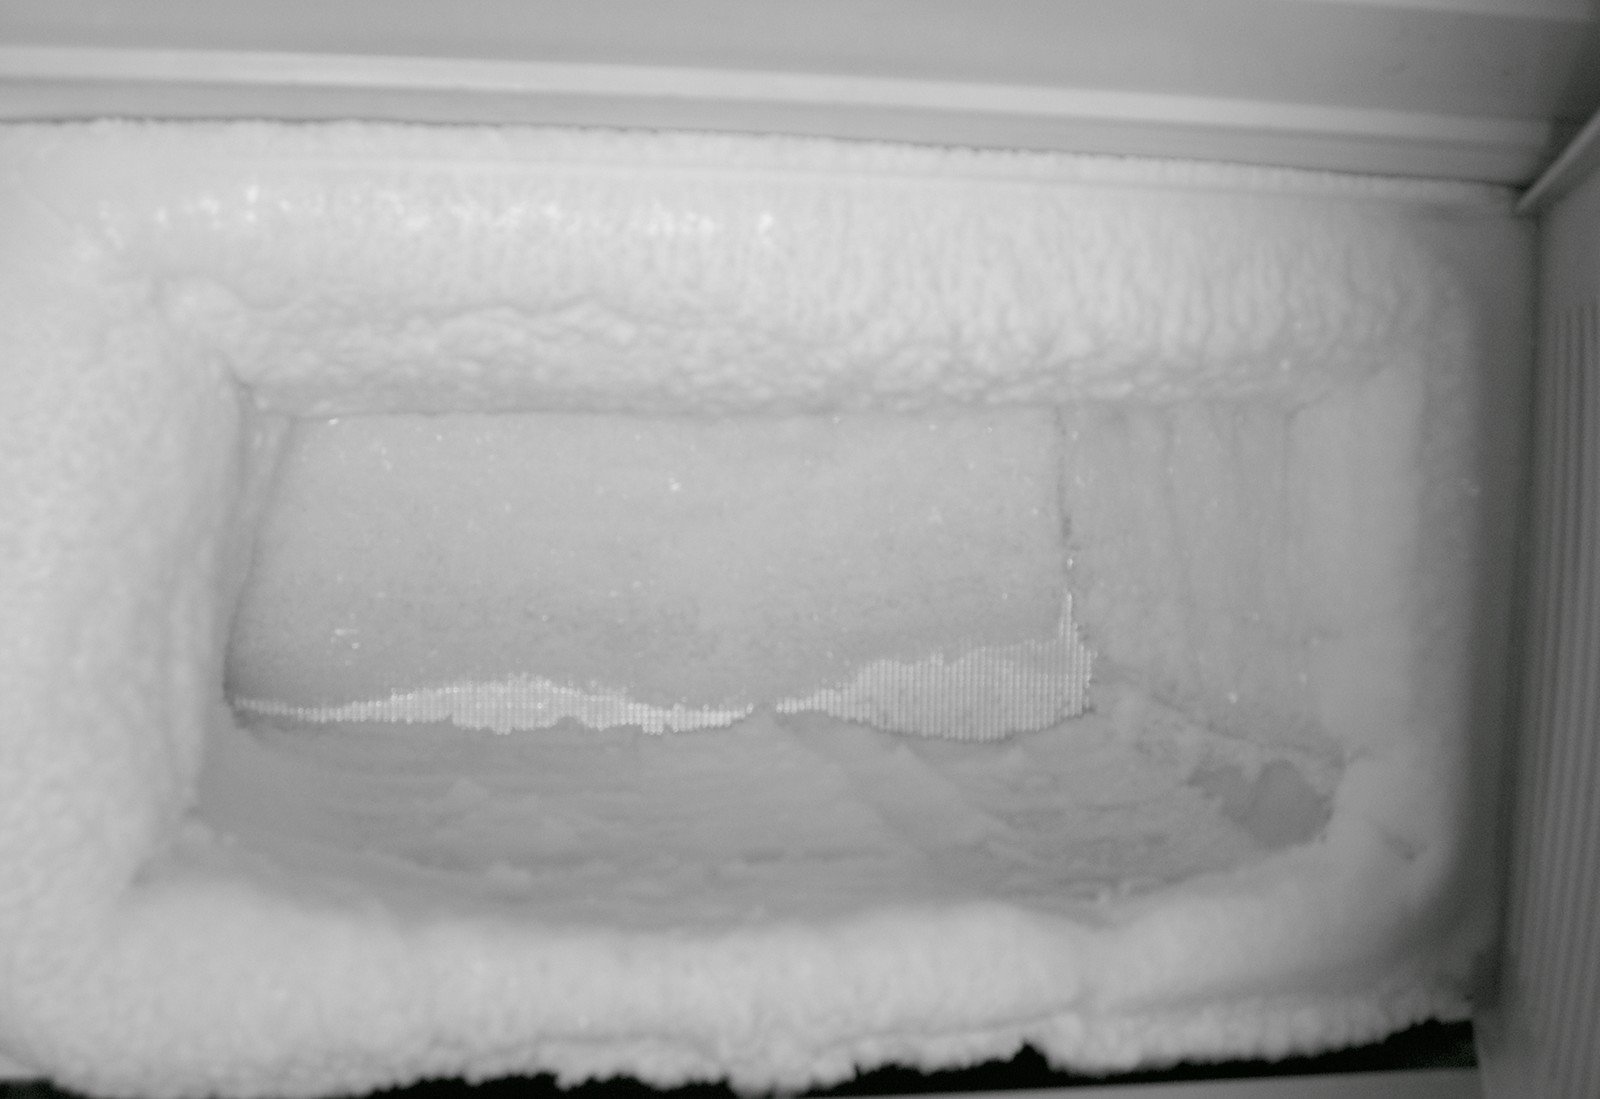 Холодильник индезит ноу фрост намерзает лед